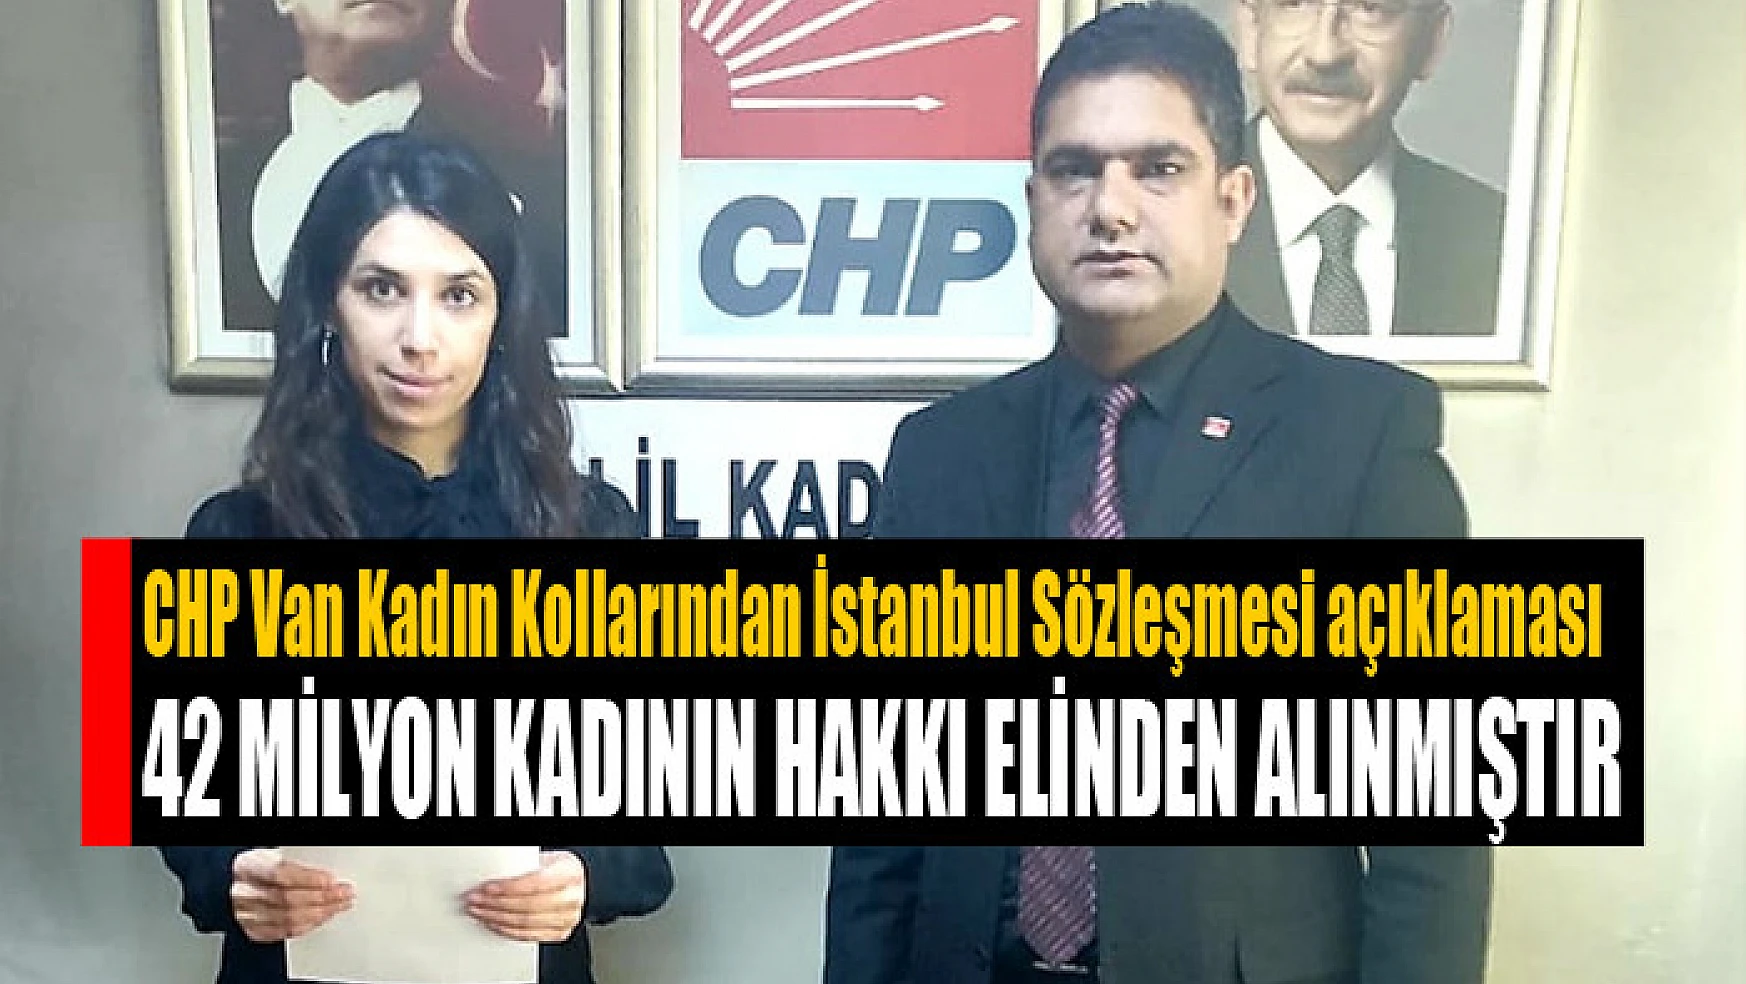 CHP Van Kadın Kollarından İstanbul Sözleşmesi açıklaması